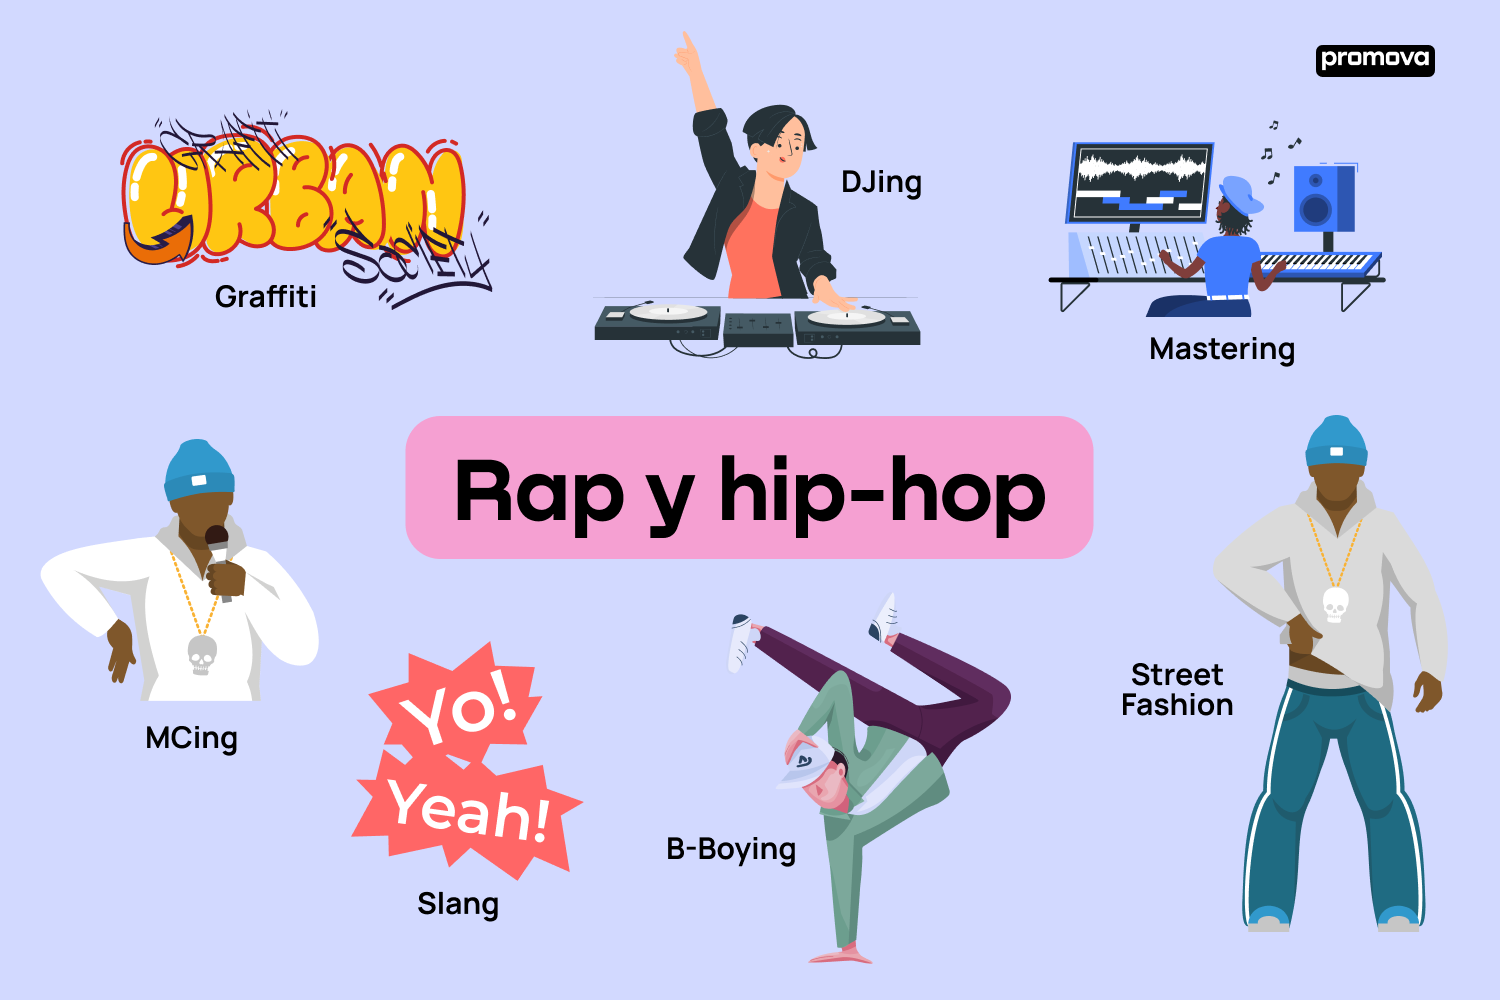 Domina el Lenguaje del Rap y Hip-Hop en Inglés con esta Guía